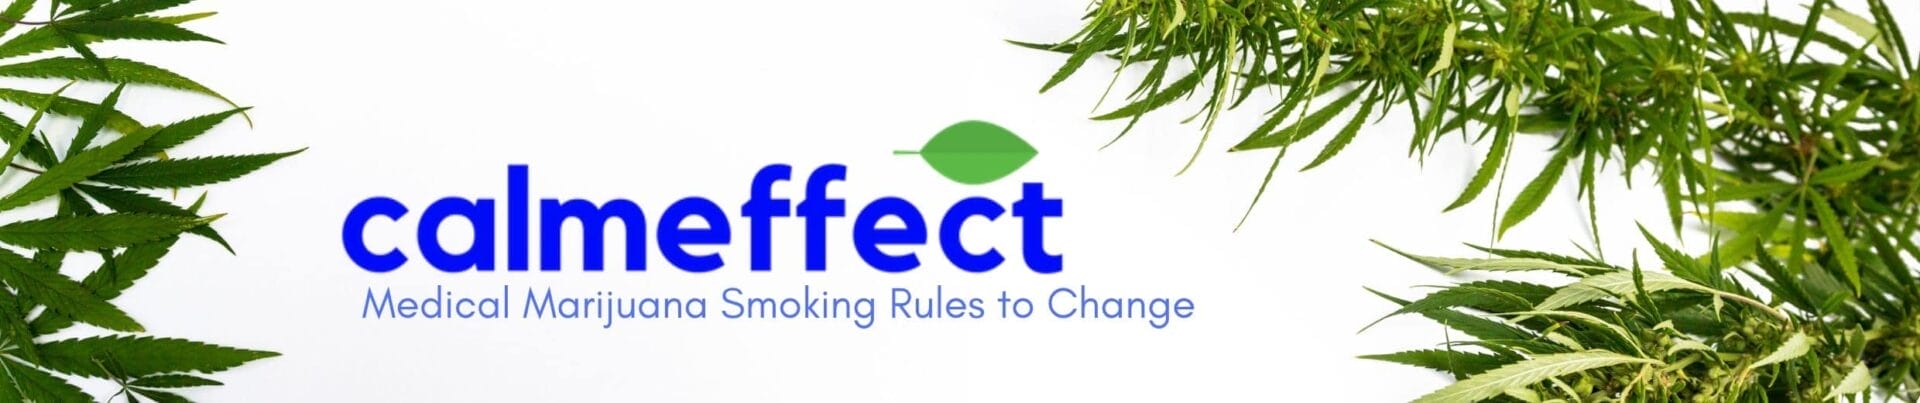 Medical Marijuana Smoking Rules to Change